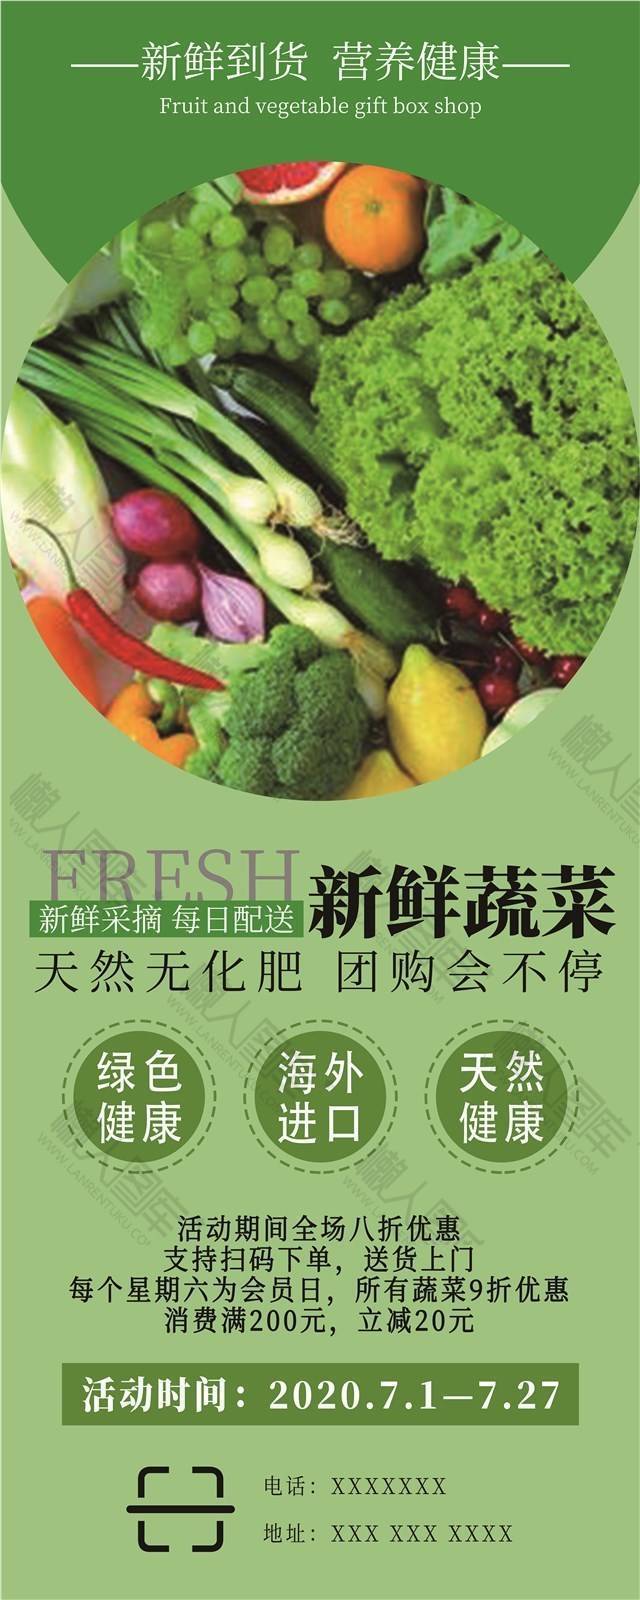 生鲜蔬菜促销宣传图片